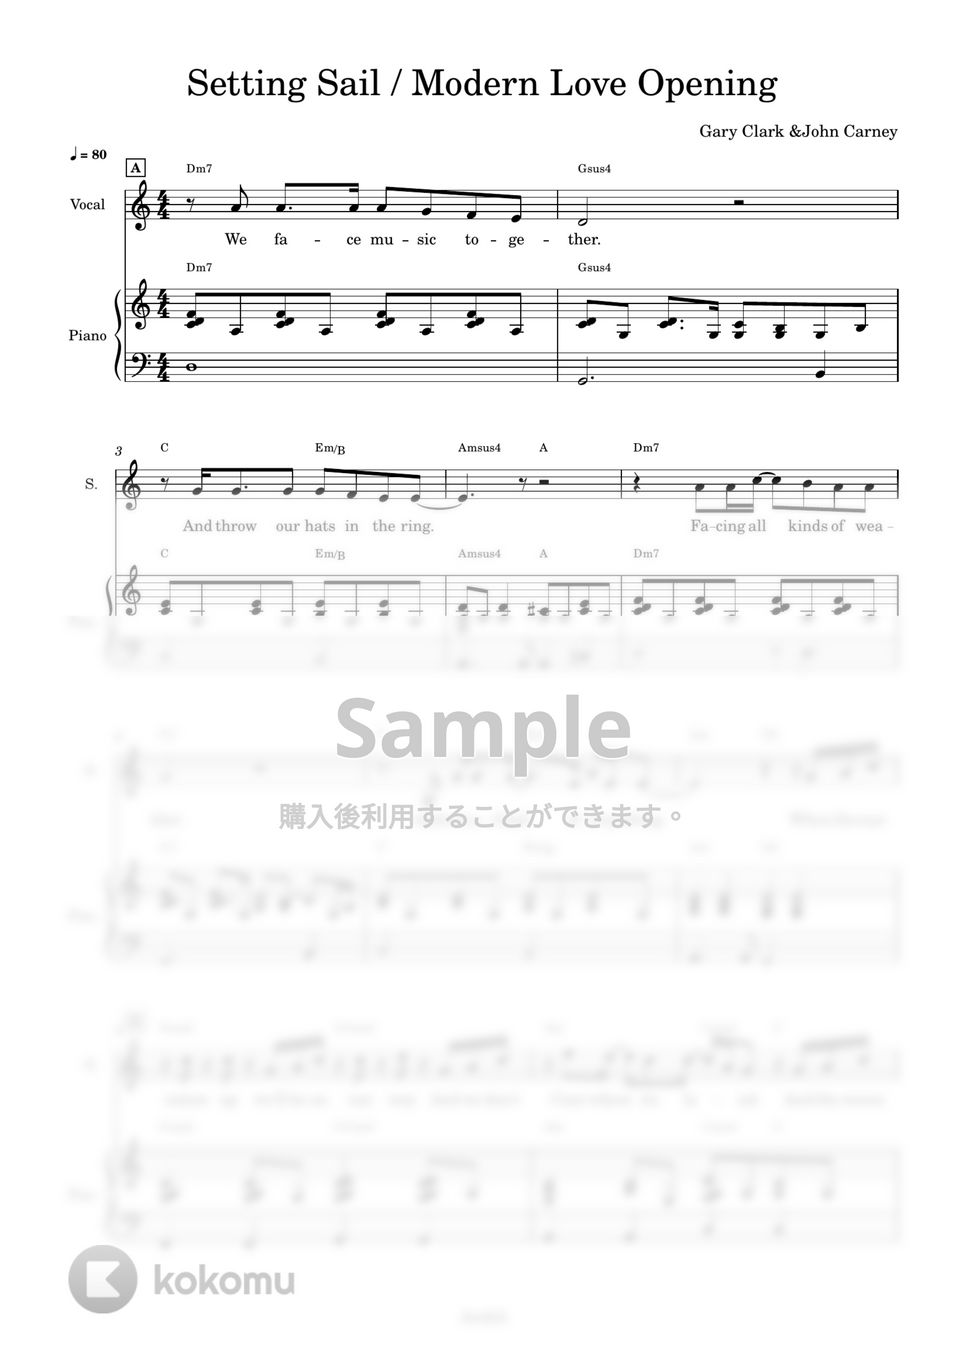 Gary Clark - Setting sail (モダンラブ/Settingsail楽譜/モダンラブオープニング曲) by AsukA818